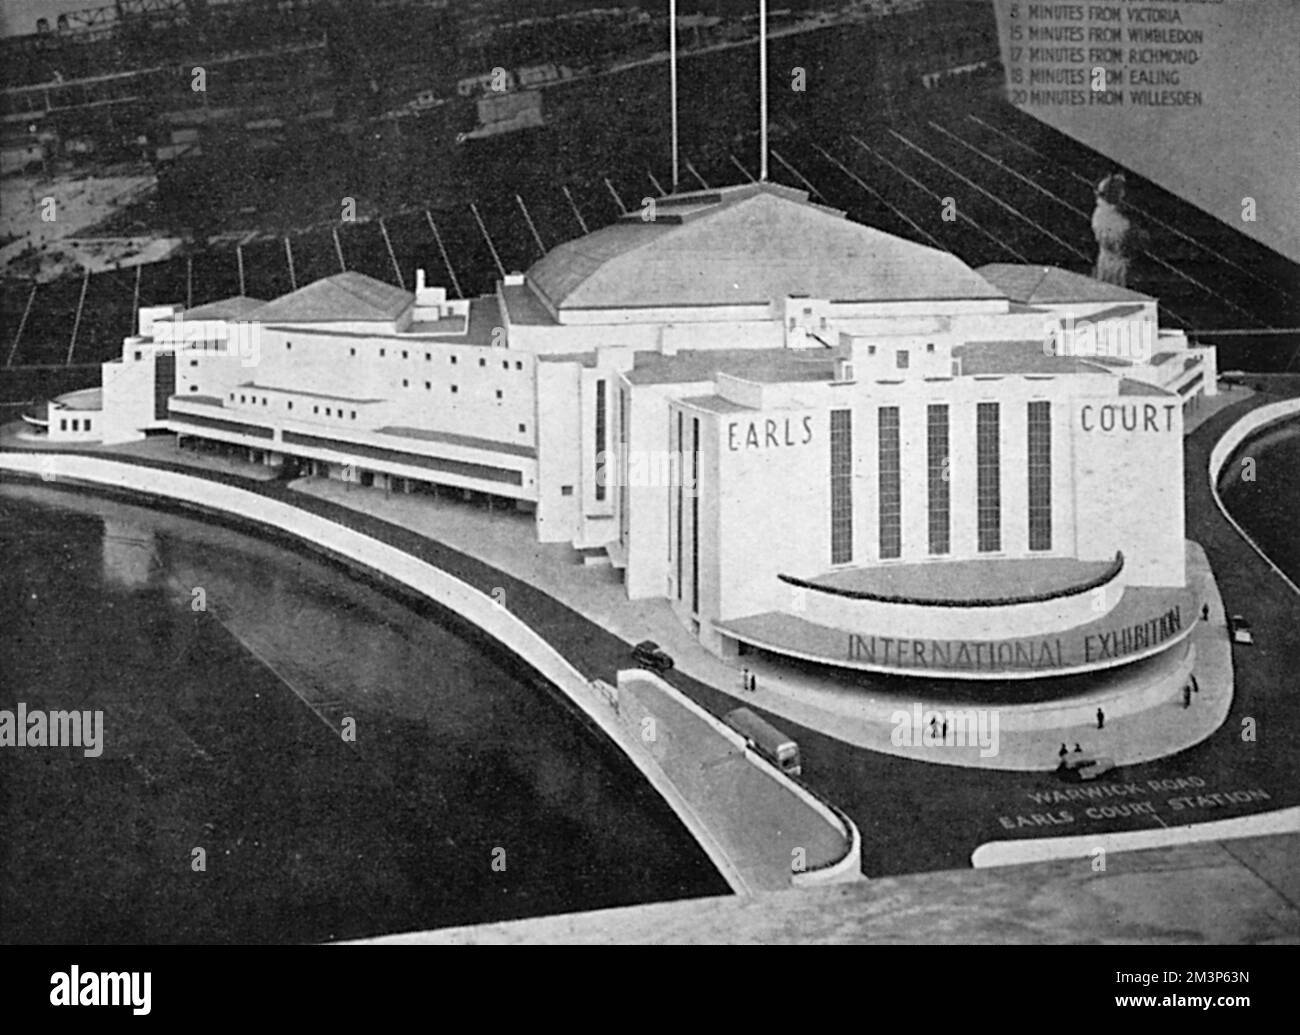 Ein Architektenmodell des Earl's Court Exhibition Centre in London zum Zeitpunkt des Baus im Jahr 1937, das seine Art déco-Fassade zeigt. Datum: 1937 Stockfoto